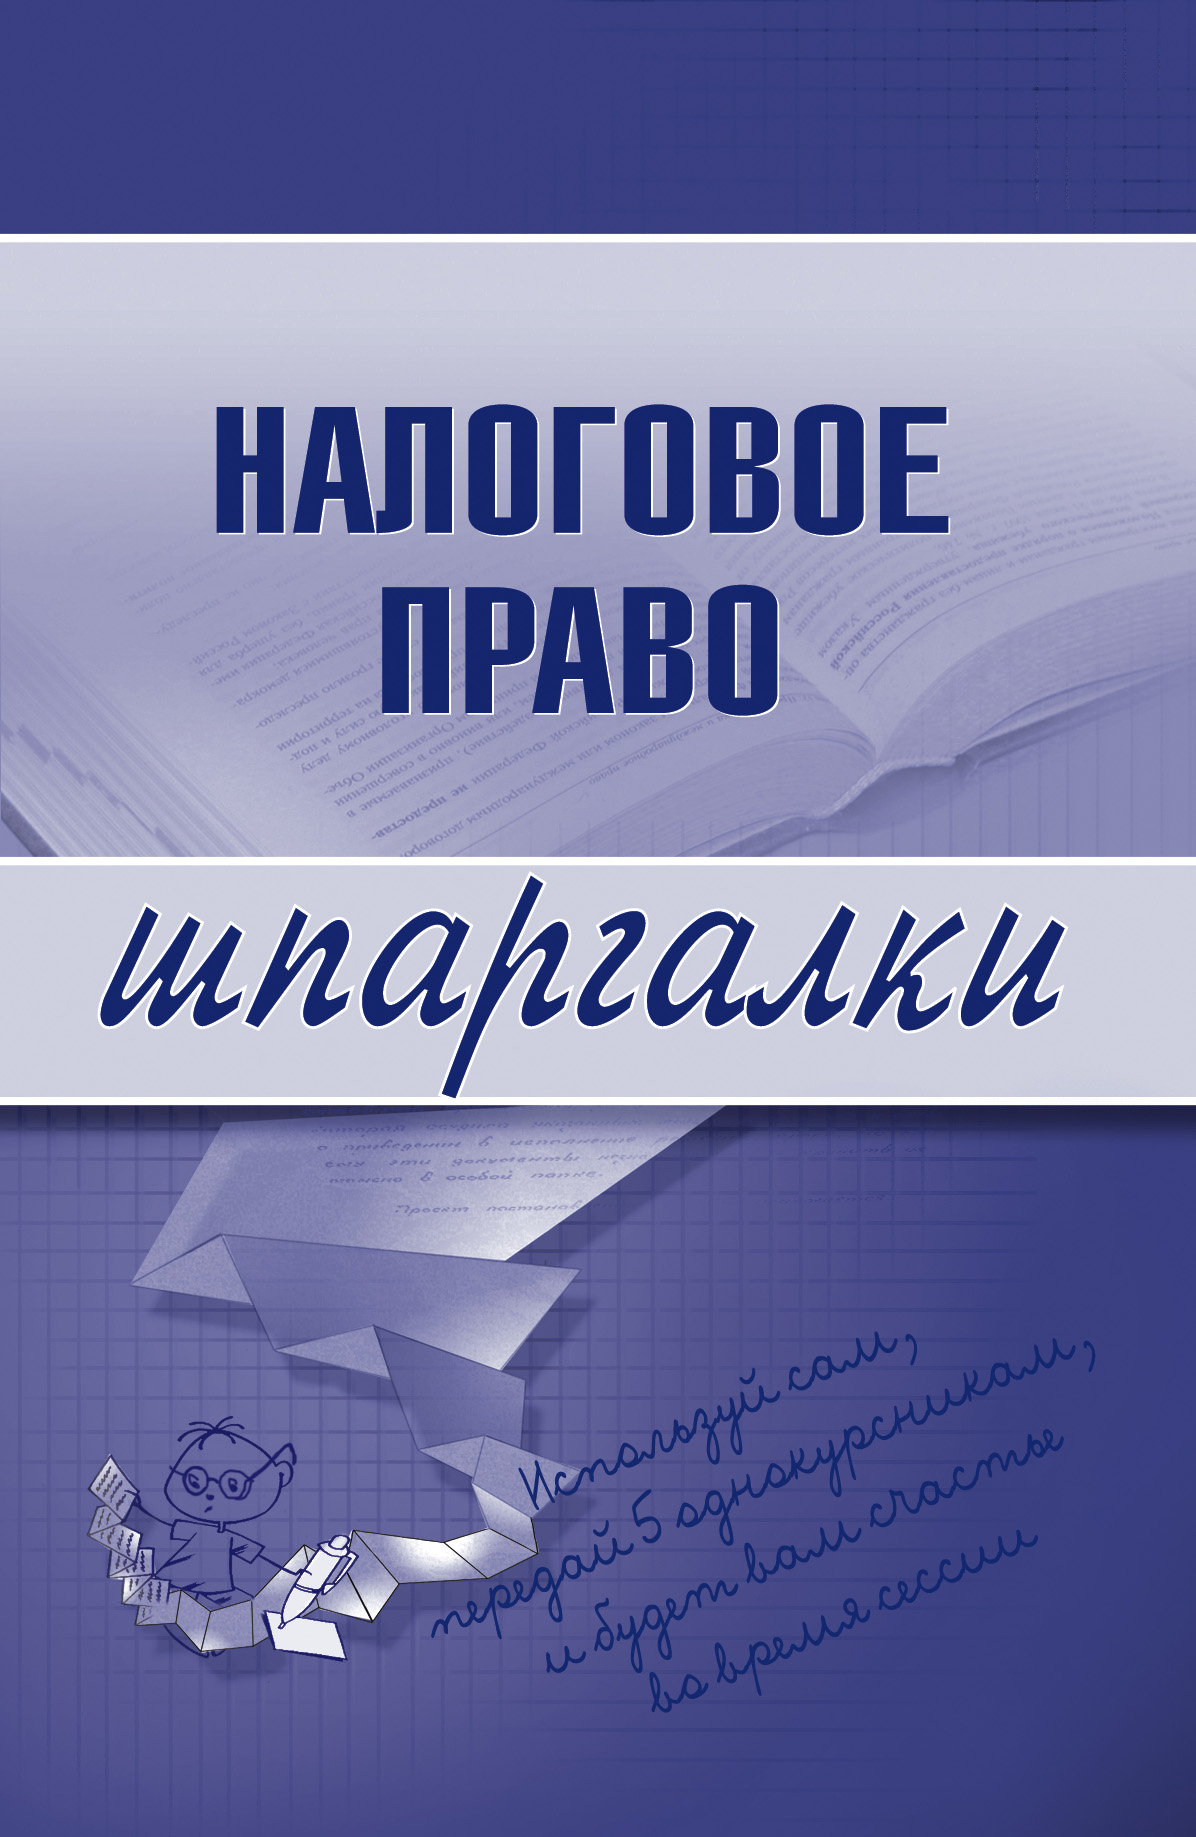 Книга Налоговое право из серии , созданная С. Микидзе, может относится к жанру Бухучет, налогообложение, аудит. Стоимость электронной книги Налоговое право с идентификатором 179755 составляет 44.95 руб.